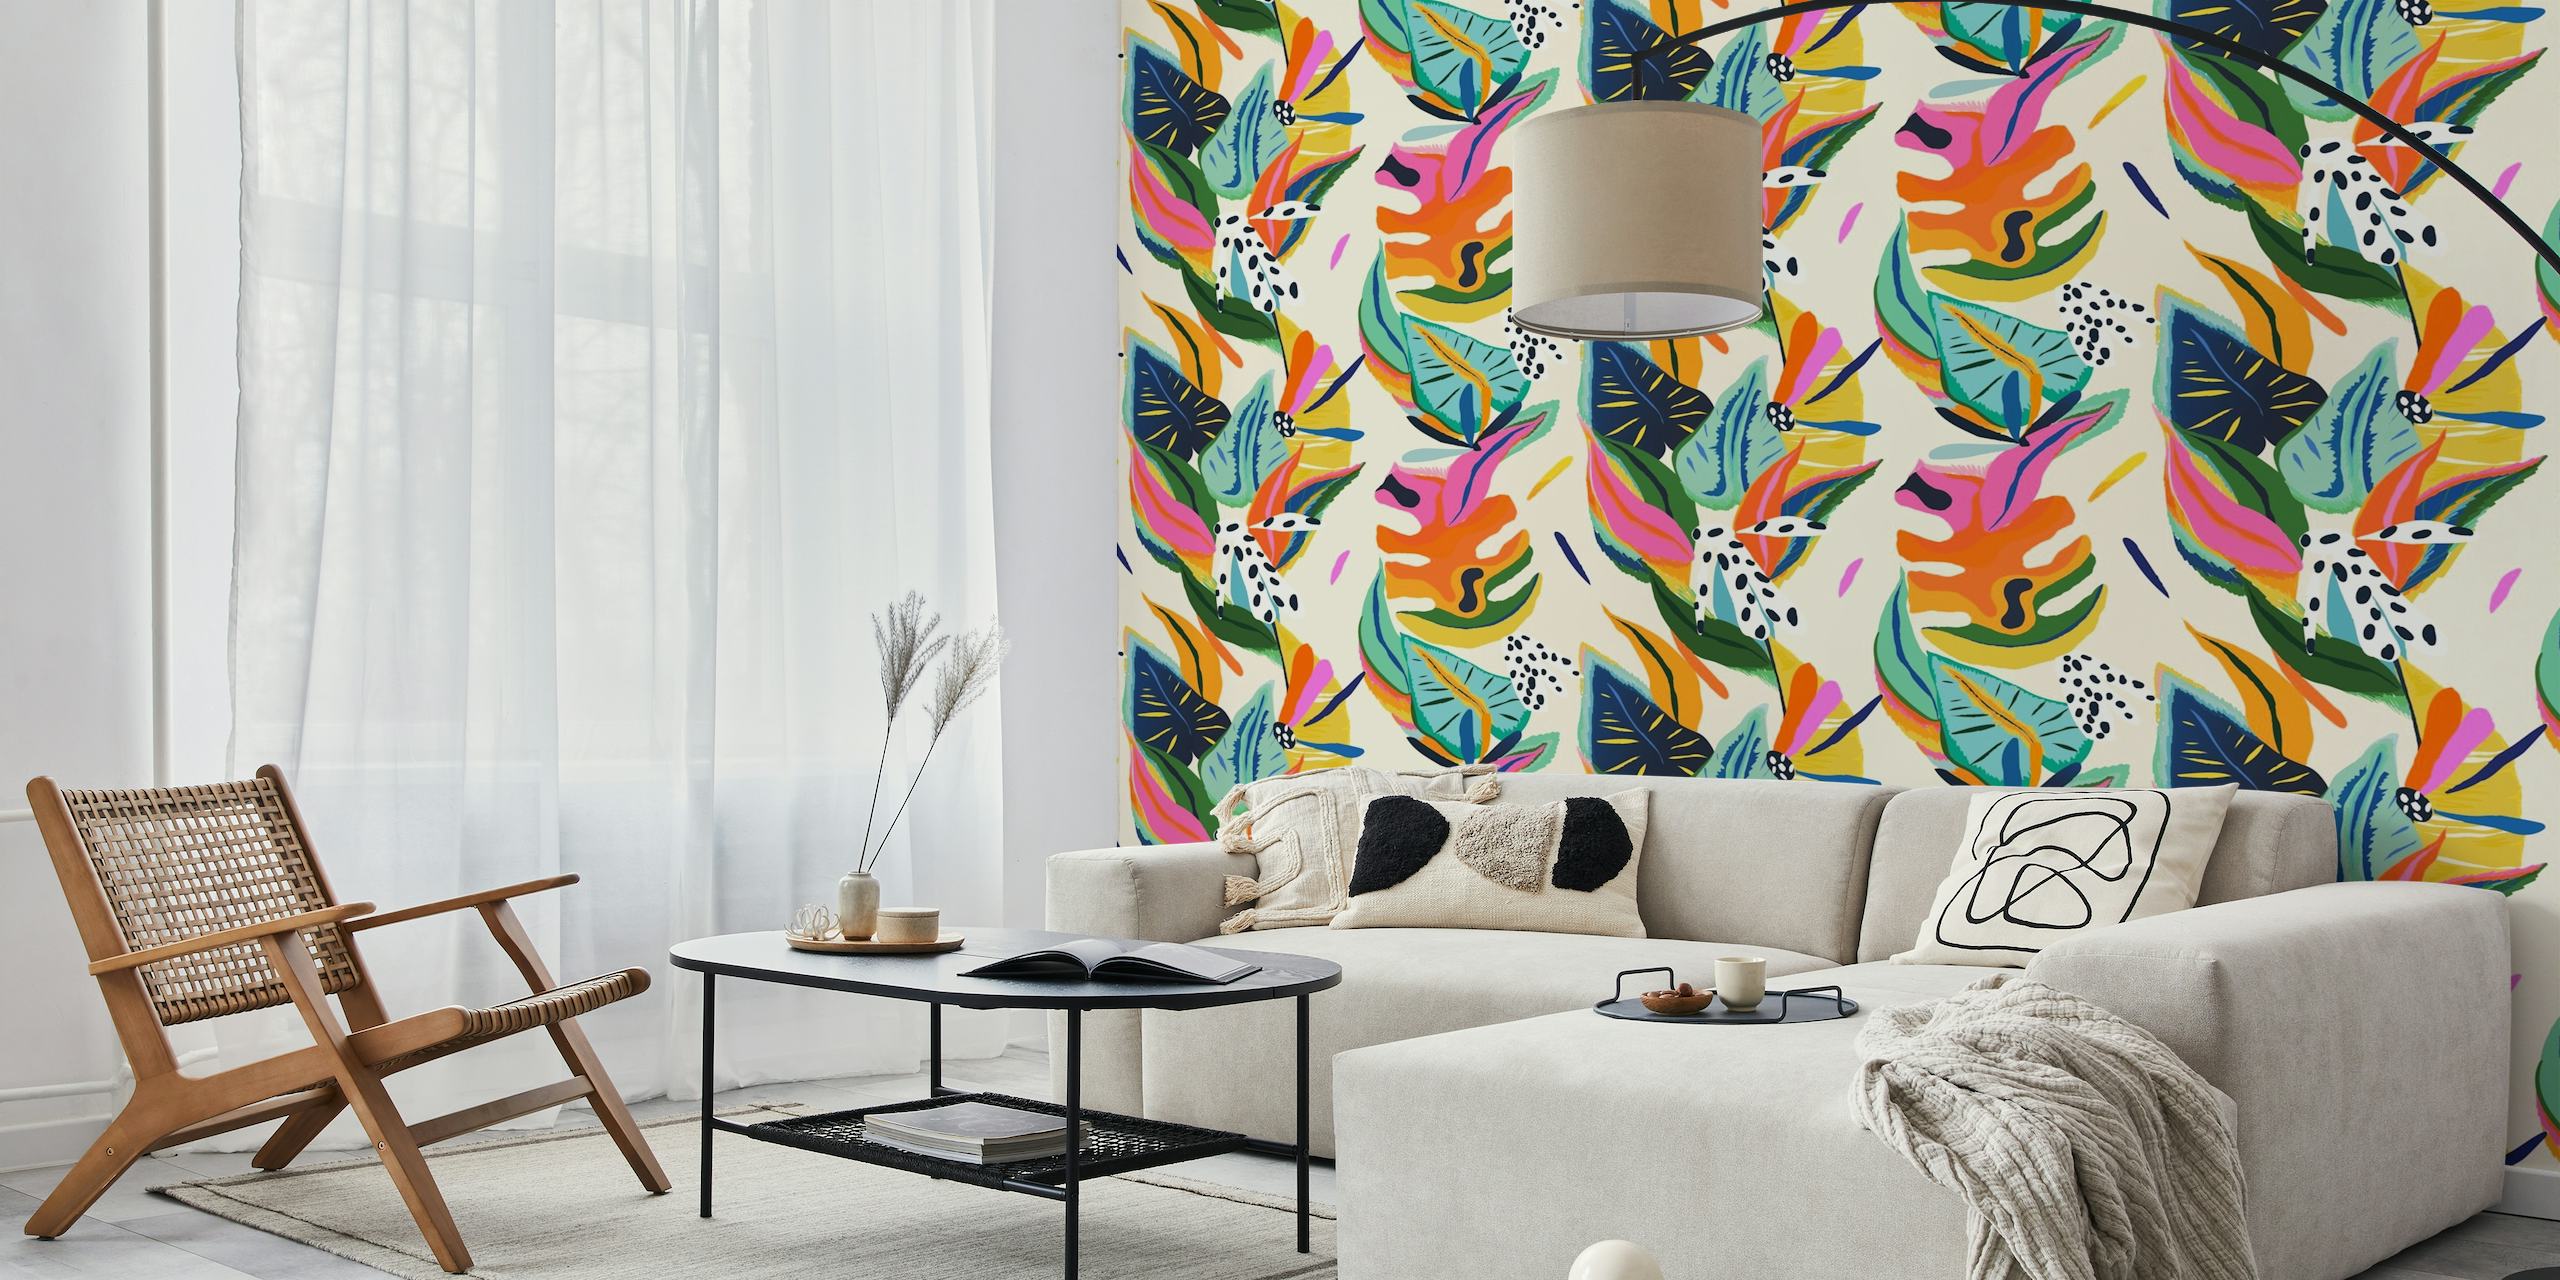 Eloisa moderni eksoottinen viidakon seinämaalaus, jossa on värikkäitä trooppisia lehtiä ja perhosia